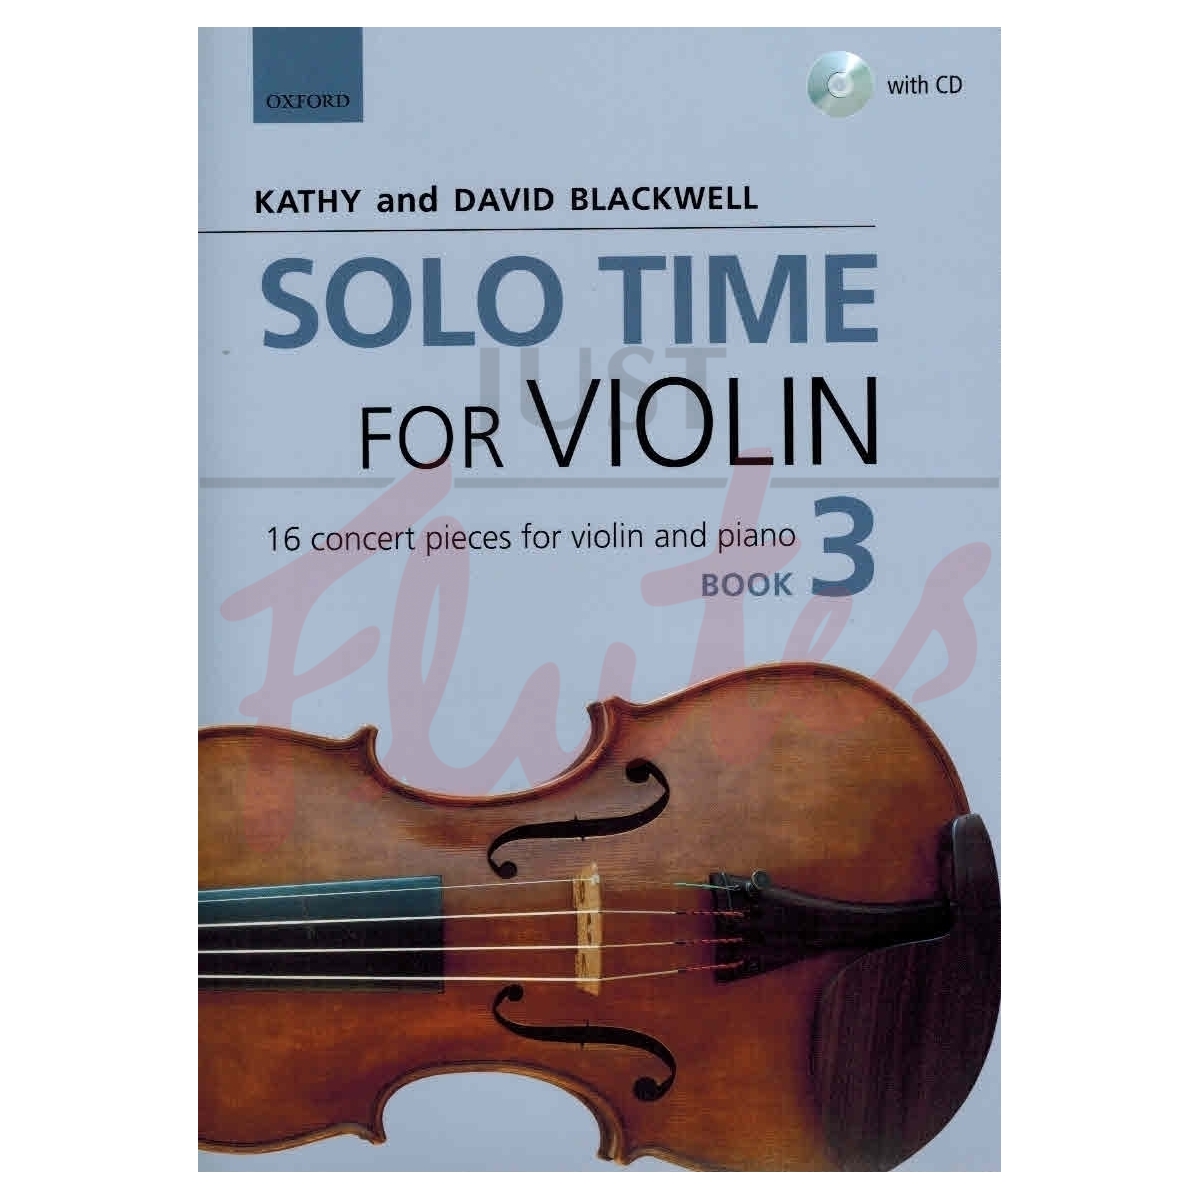 Solo Time for Violin Book 3